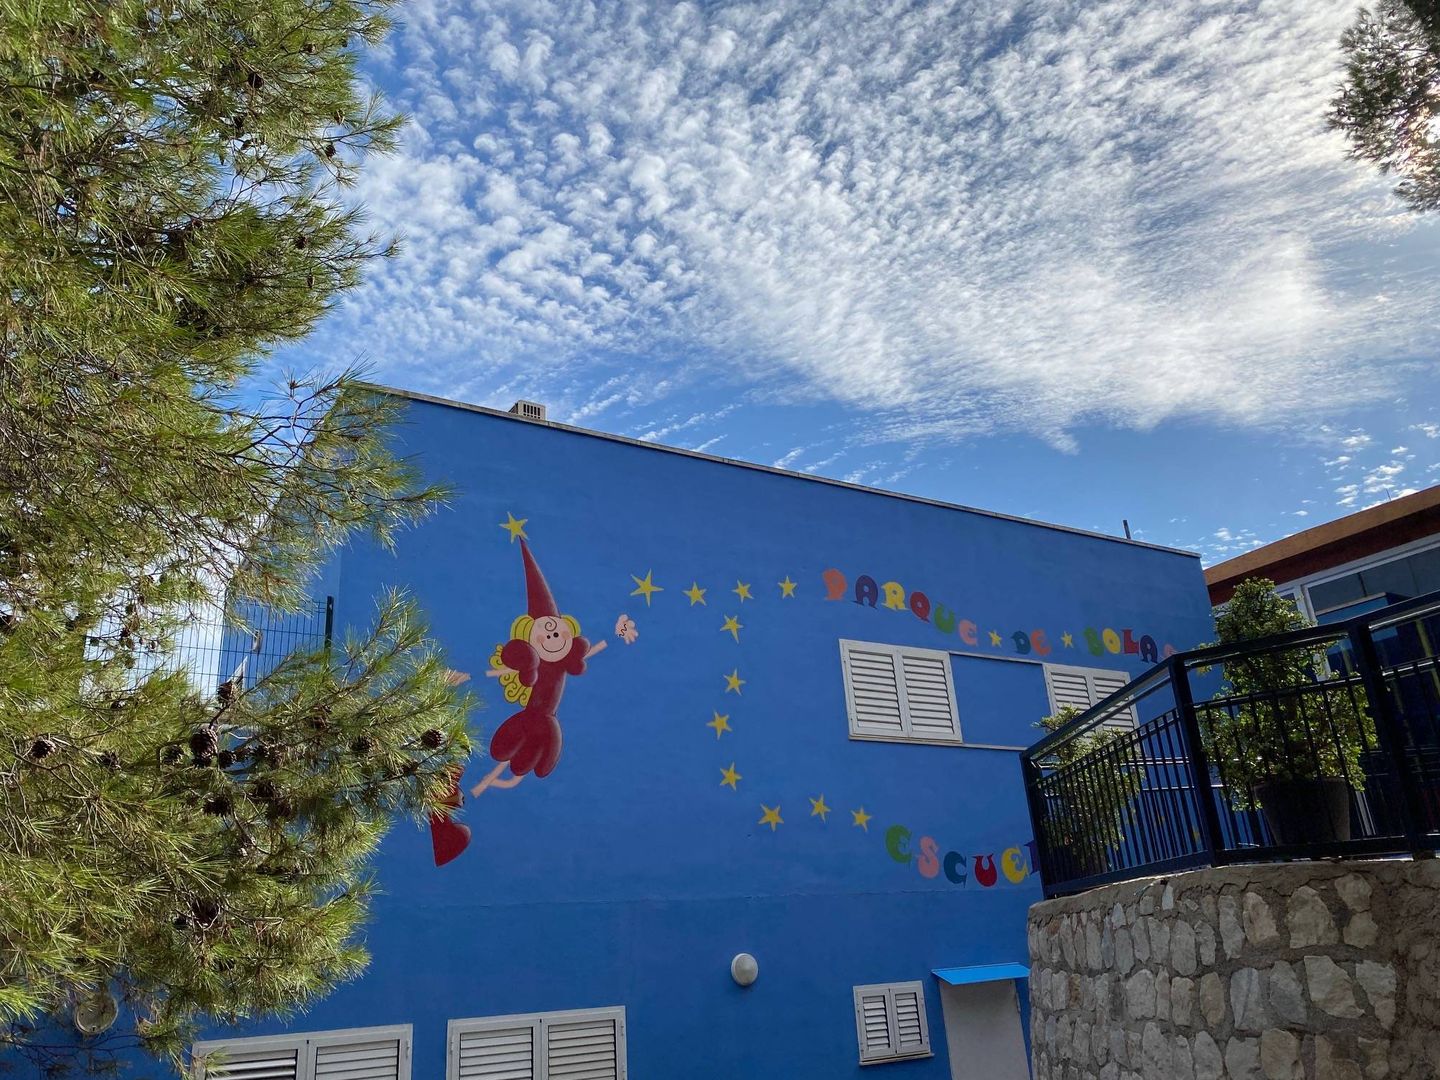 Sede de la escuela infantil Cuco, en Cerrado de Calderón, Málaga. (Agustín Rivera)